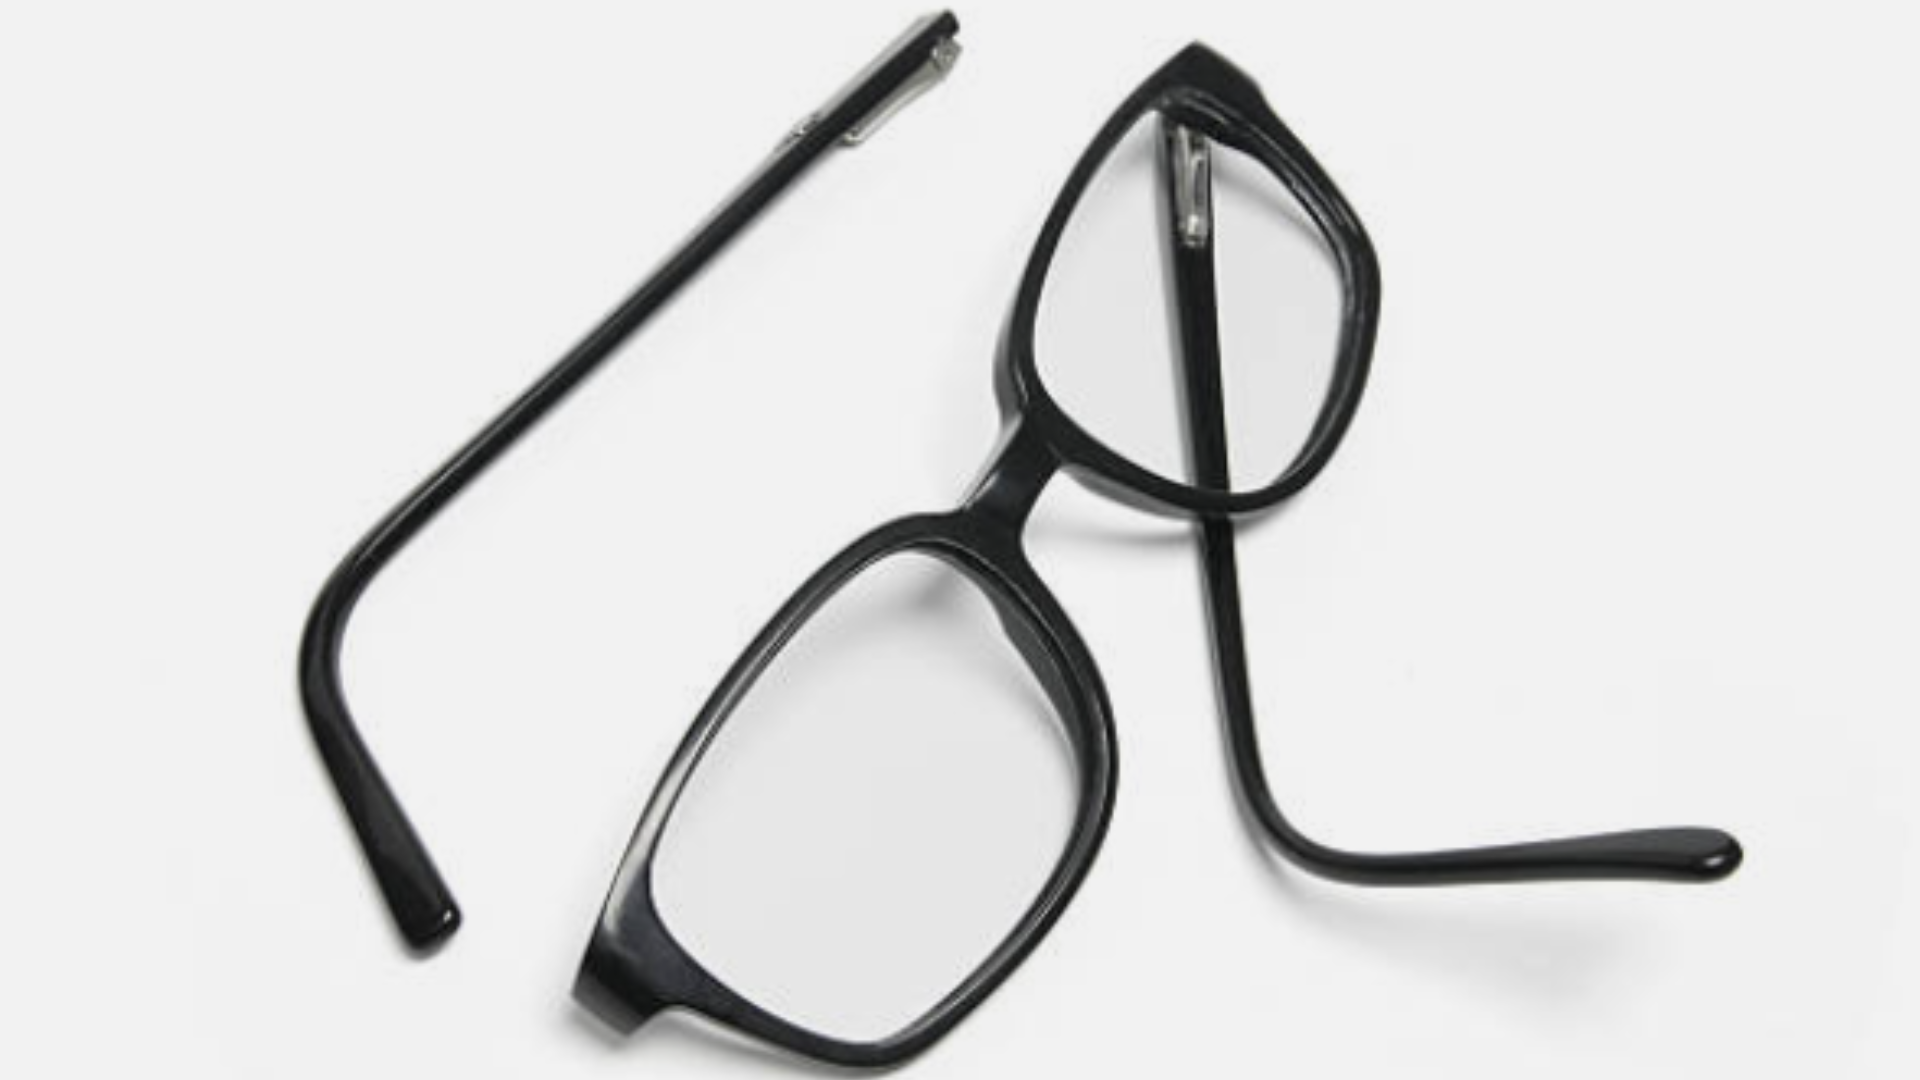 Perna do óculos quebrada: Como consertar?